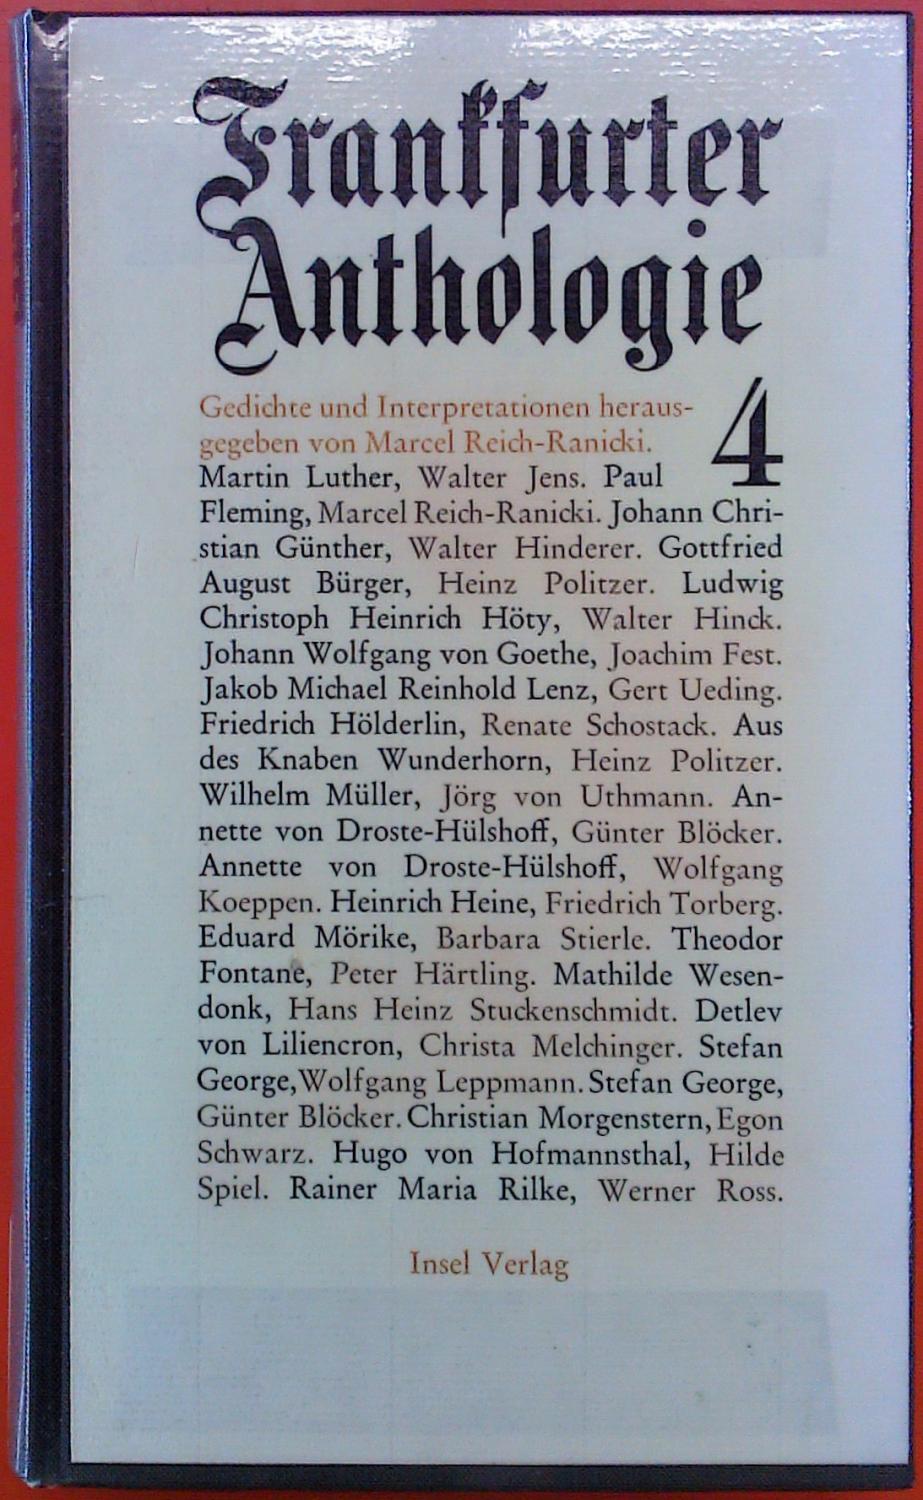 Frankfurter Anthologie. 4. Gedichte und Interpretationen. Erste Auflage.